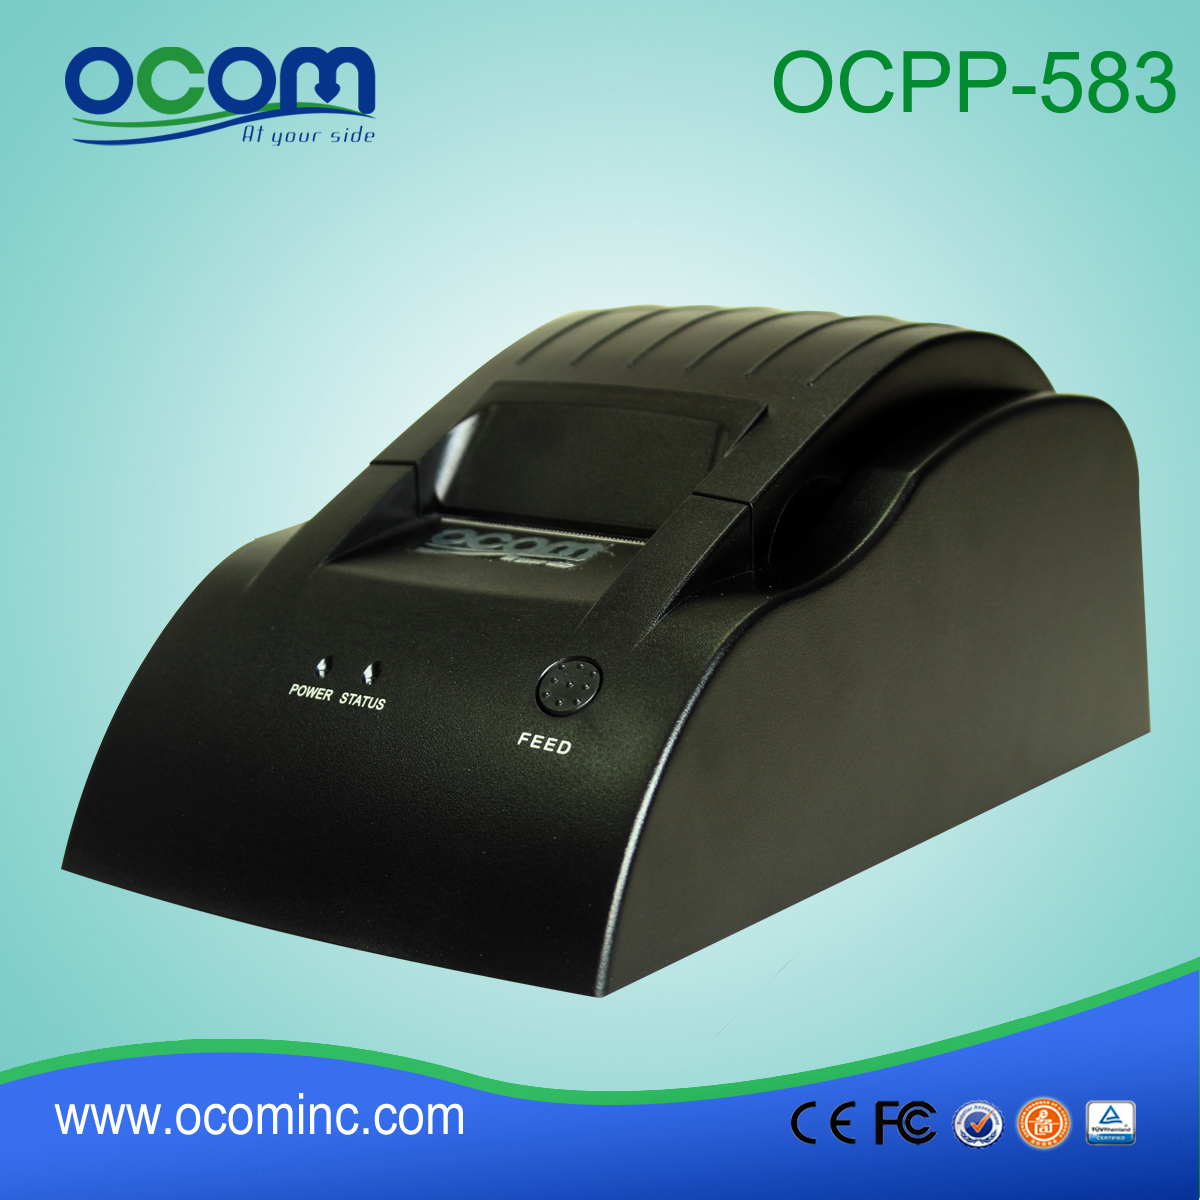 OCPP-583: 2015 bezpośrednia cena drukarka termiczna, drukarka termiczna poz